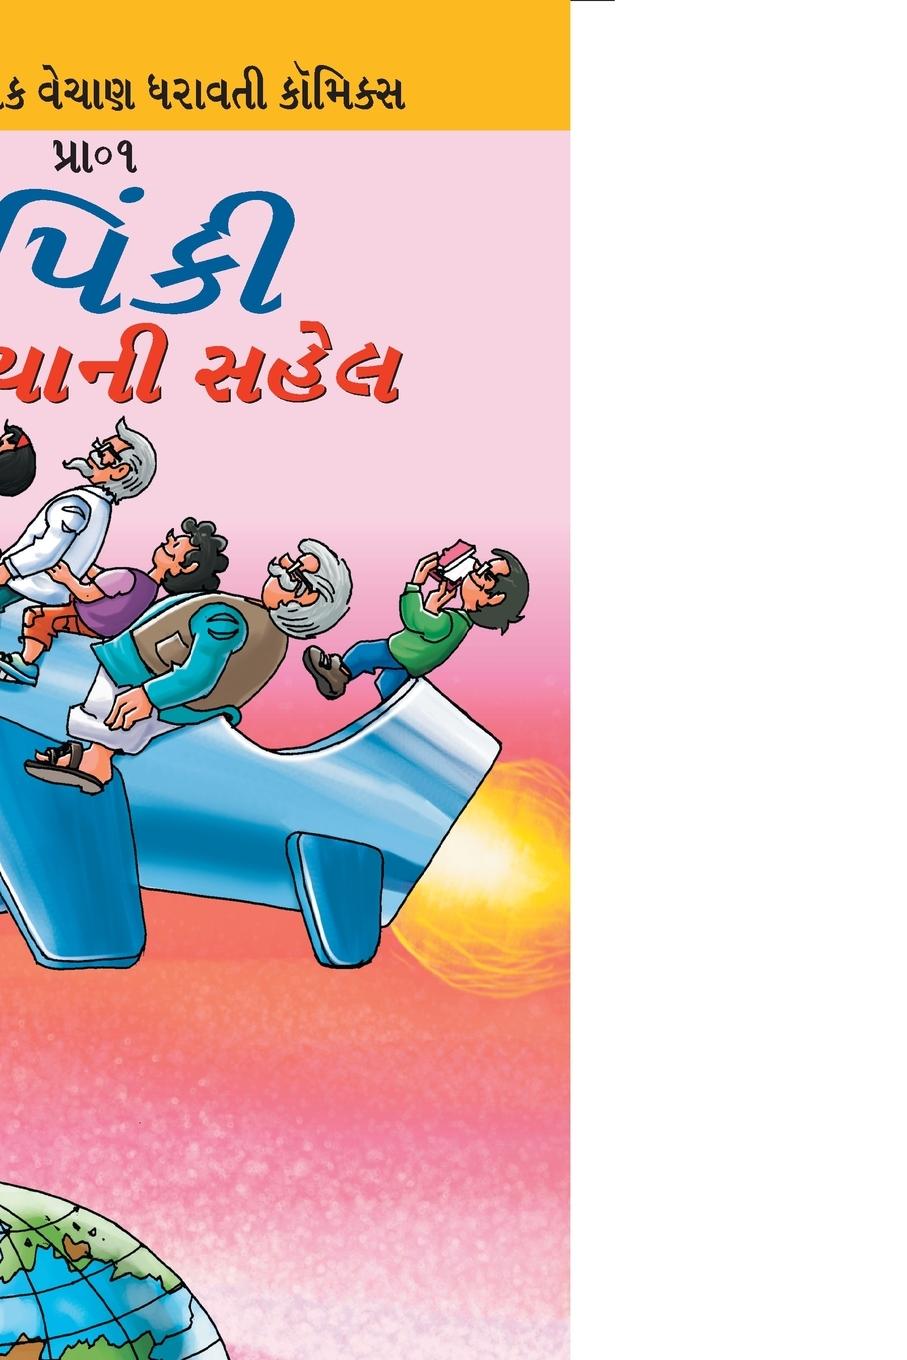 Kniha Pinki World Tour in Gujarati 